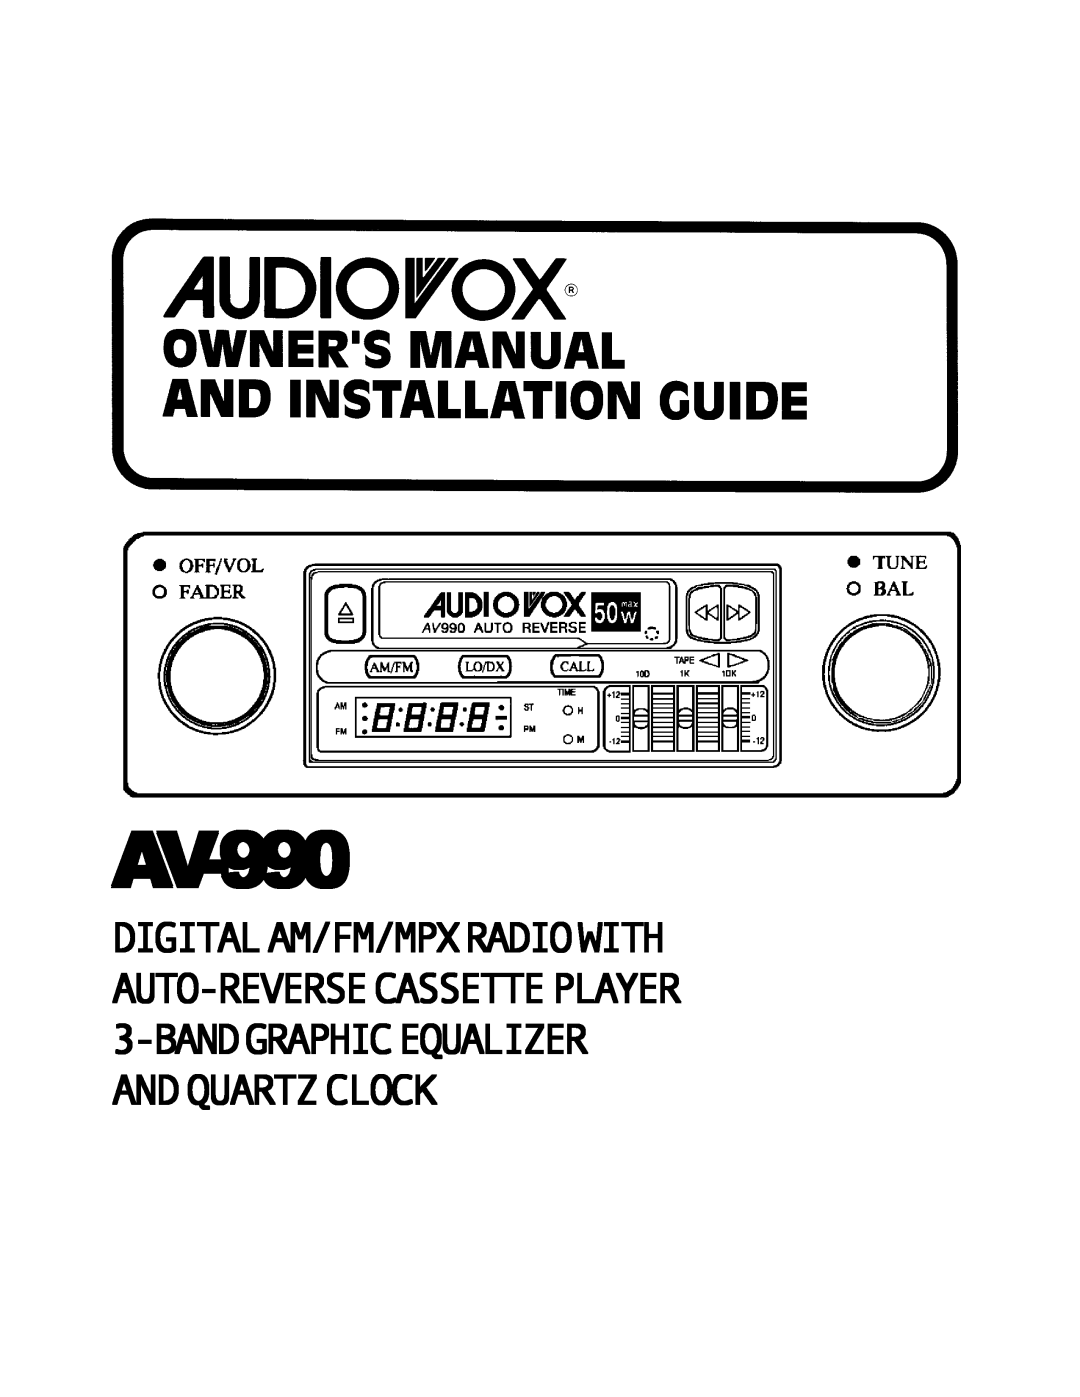 Audiovox manual AV-990 